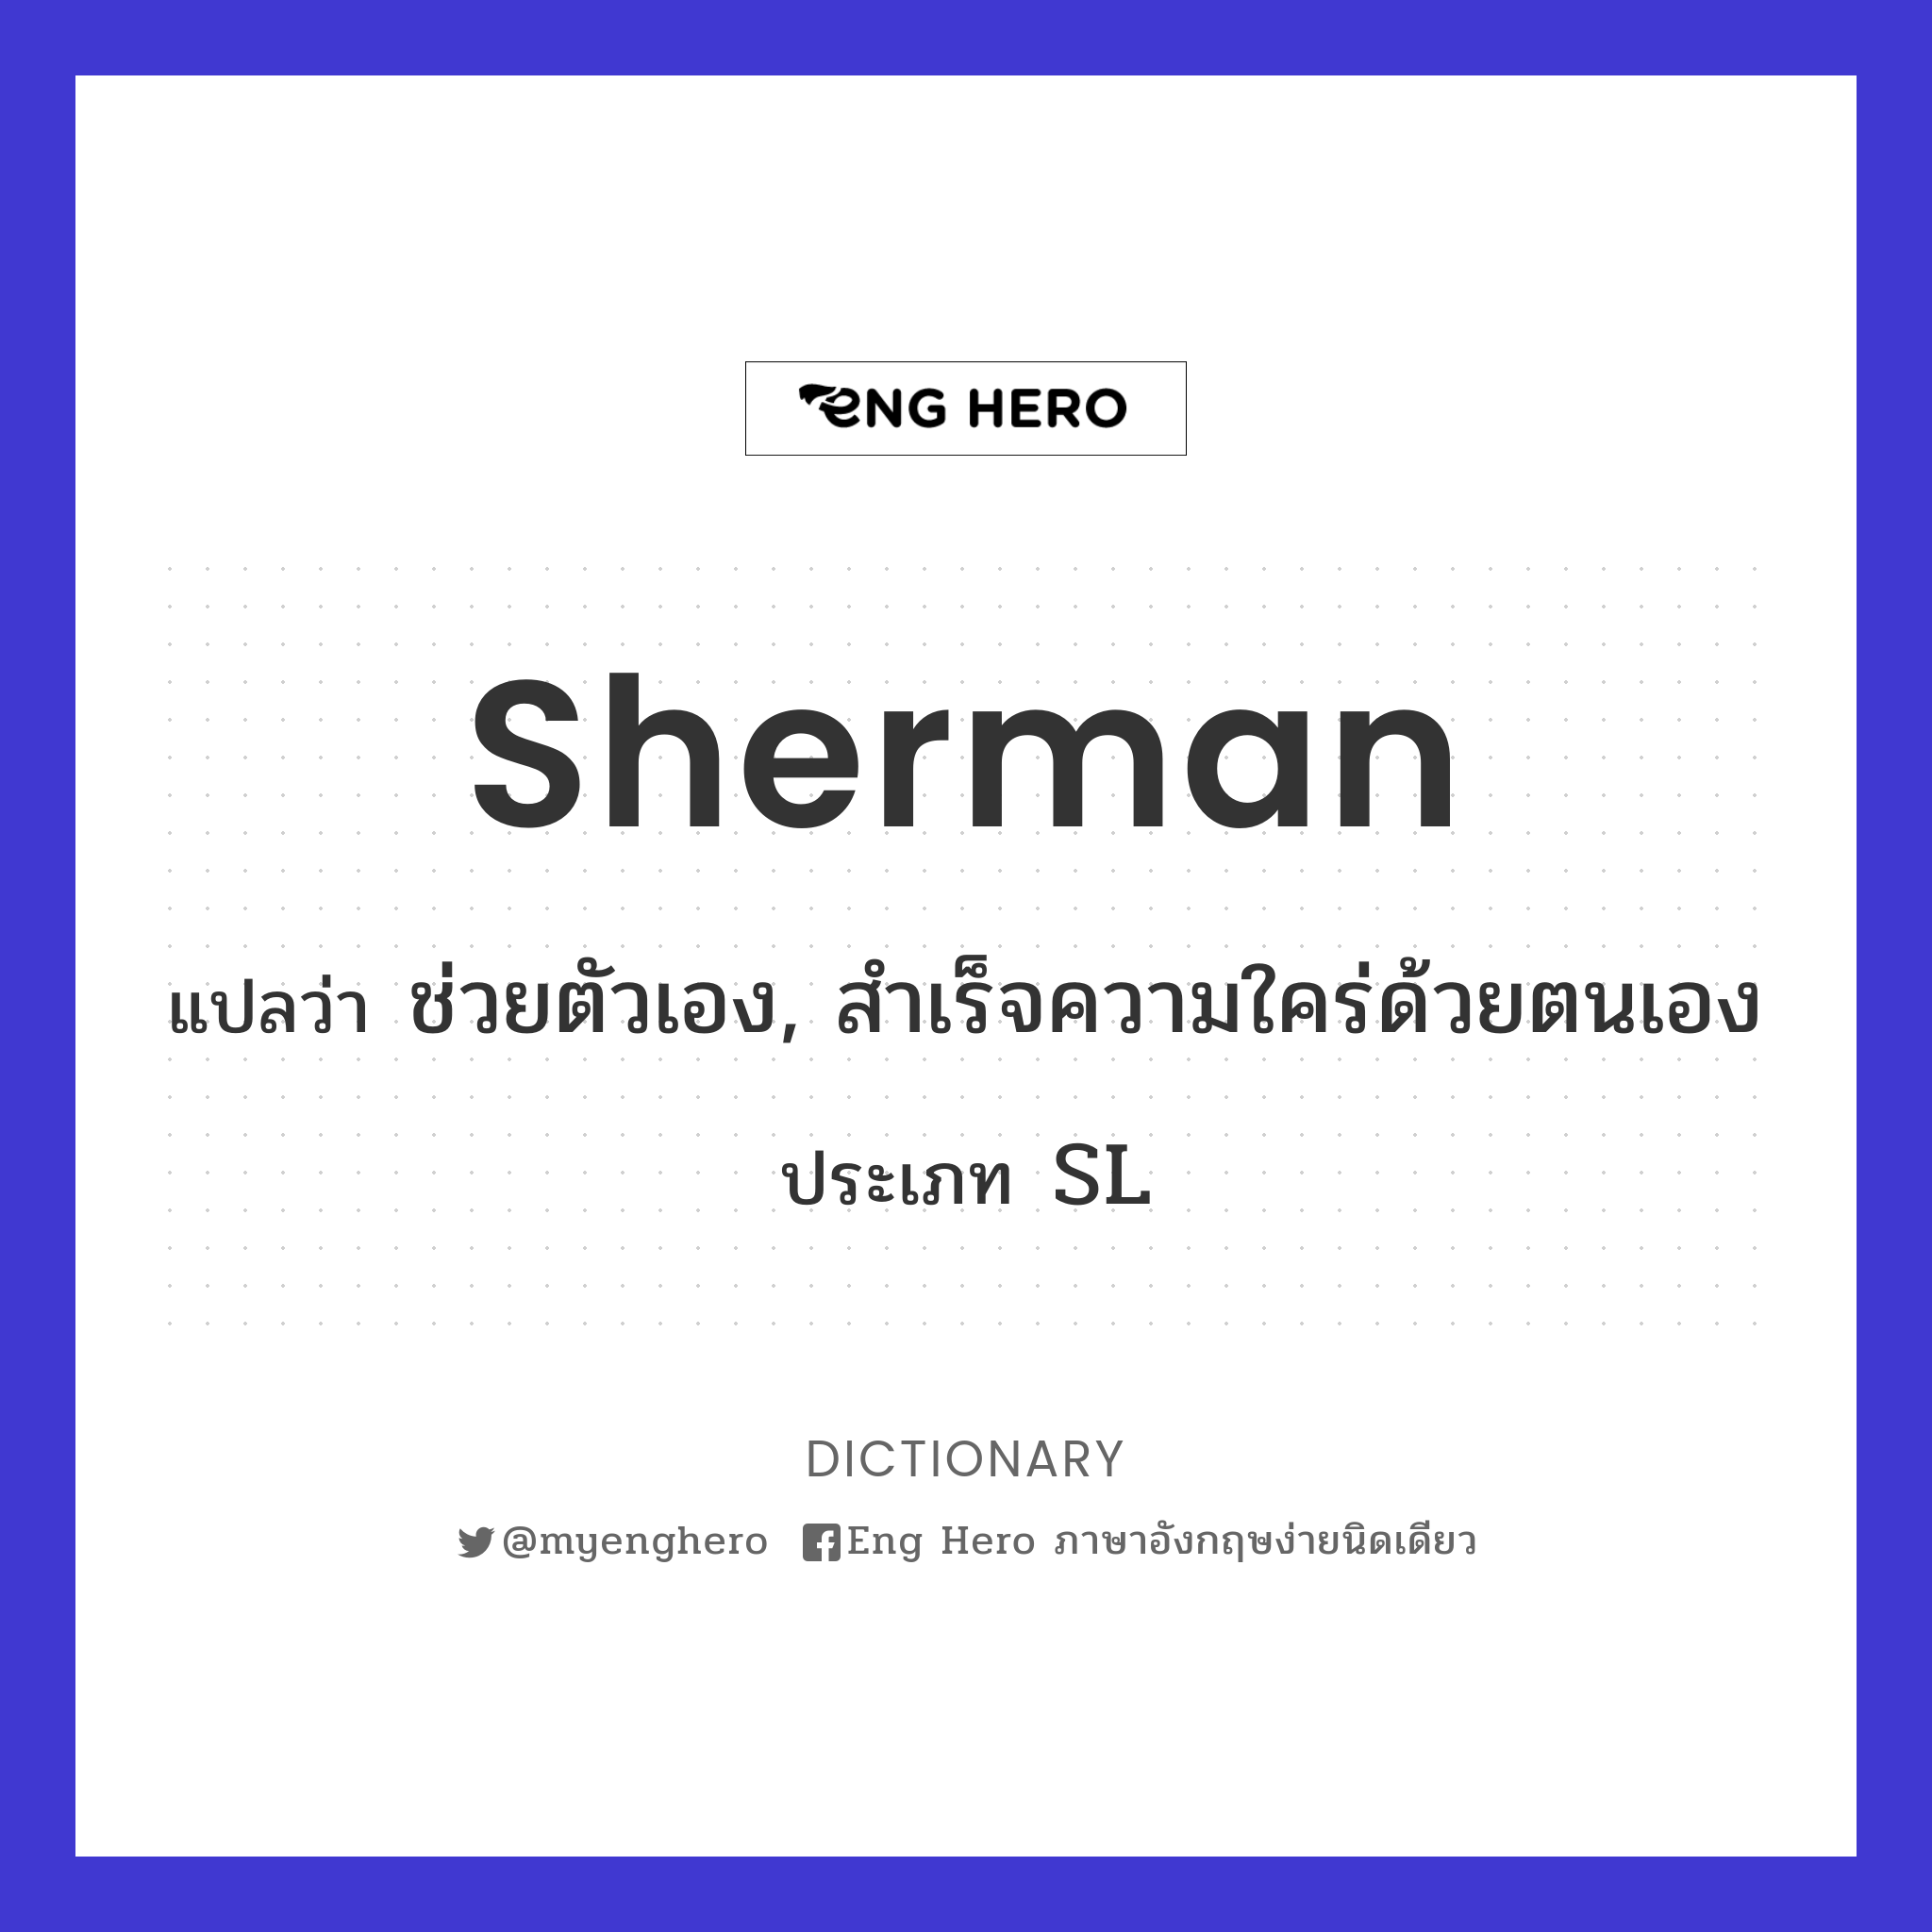 sherman